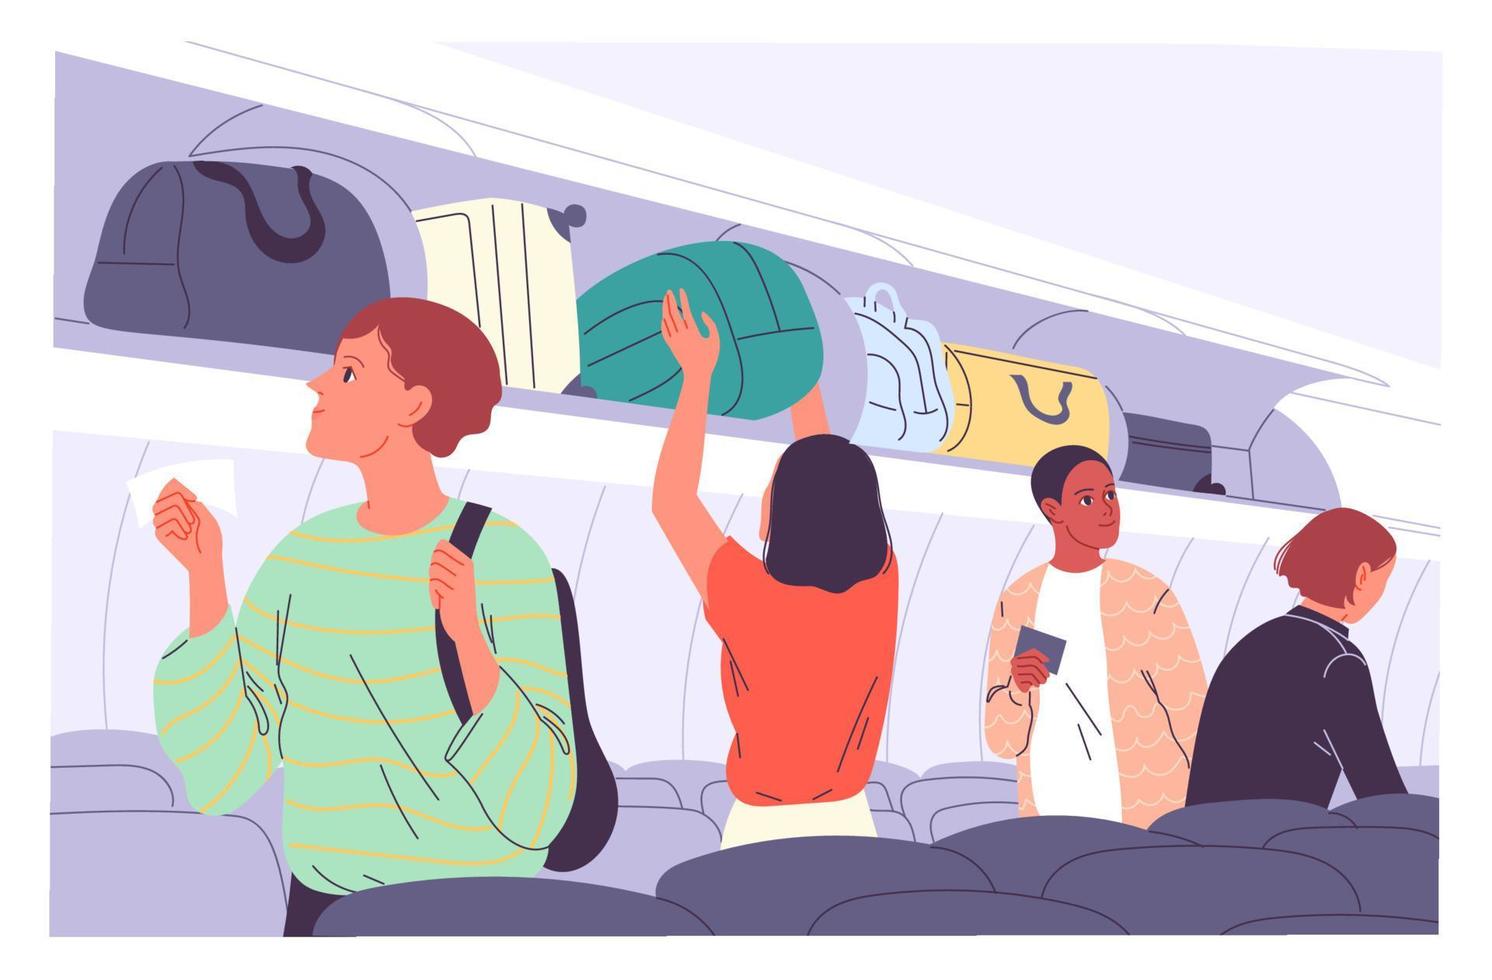 los pasajeros colocan su equipaje de mano en los estantes superiores del avión vector